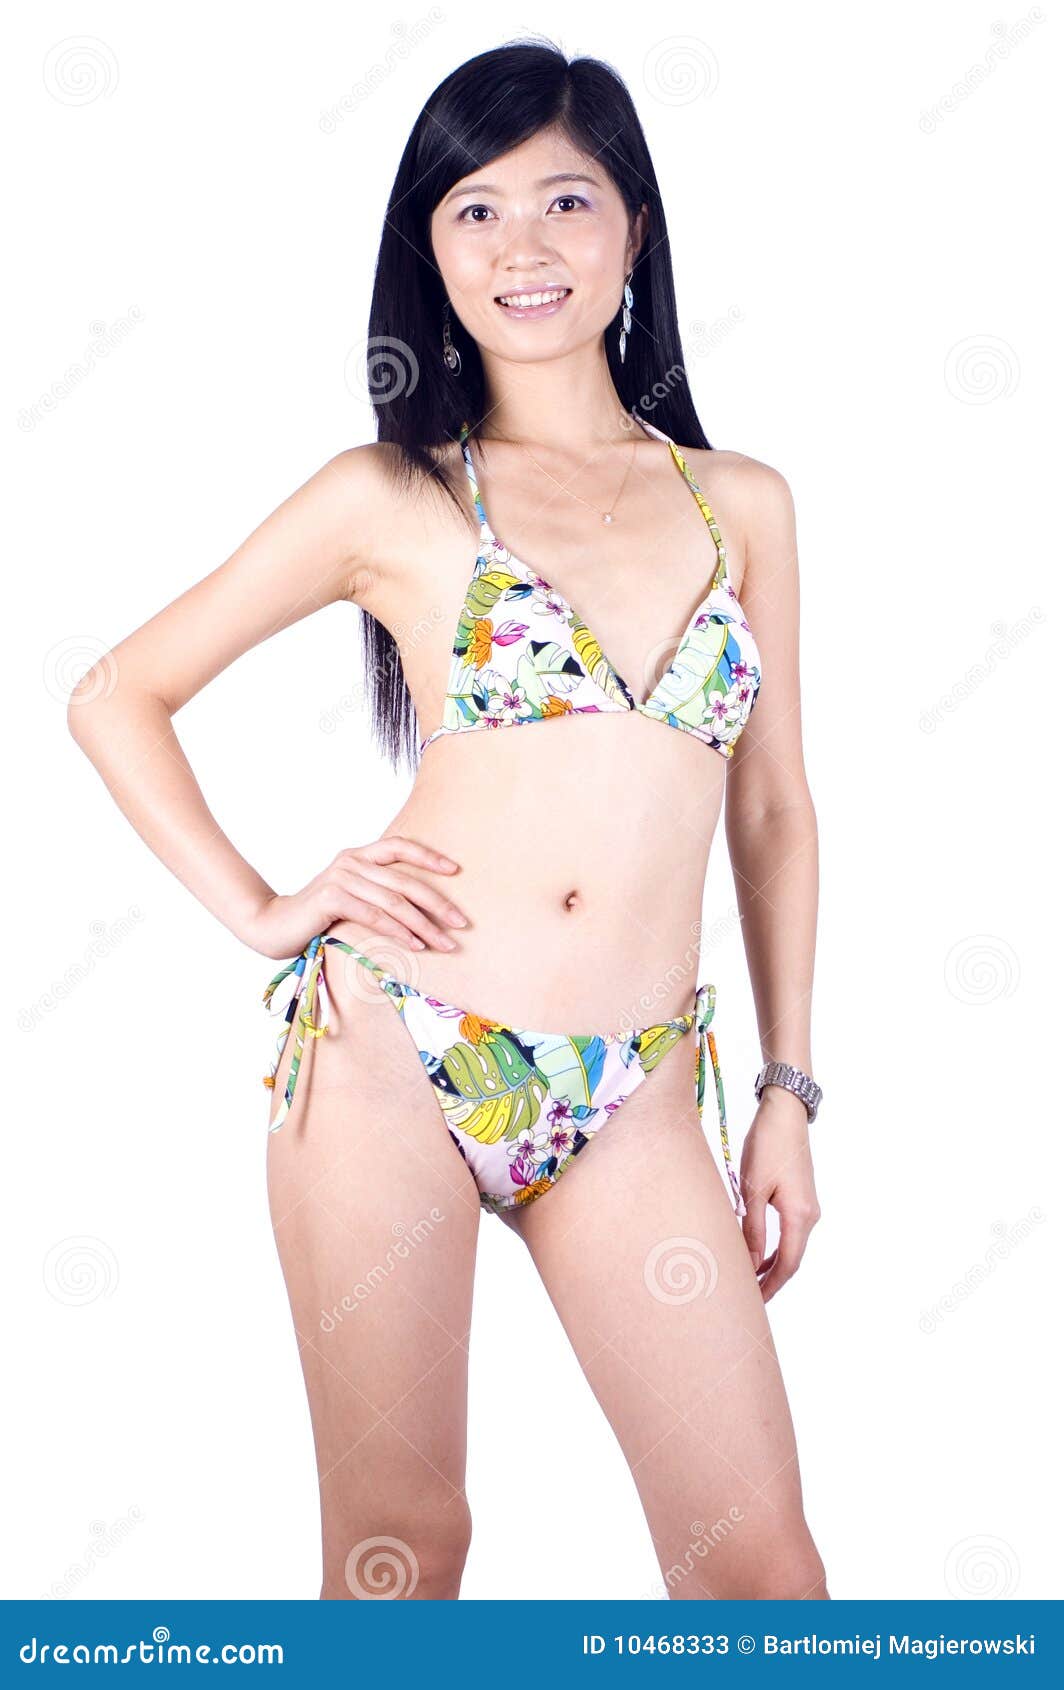 比基尼泳装中国人女孩库存图片. 图片包括有夫人, 纵向, 活动家, 聚会所  image